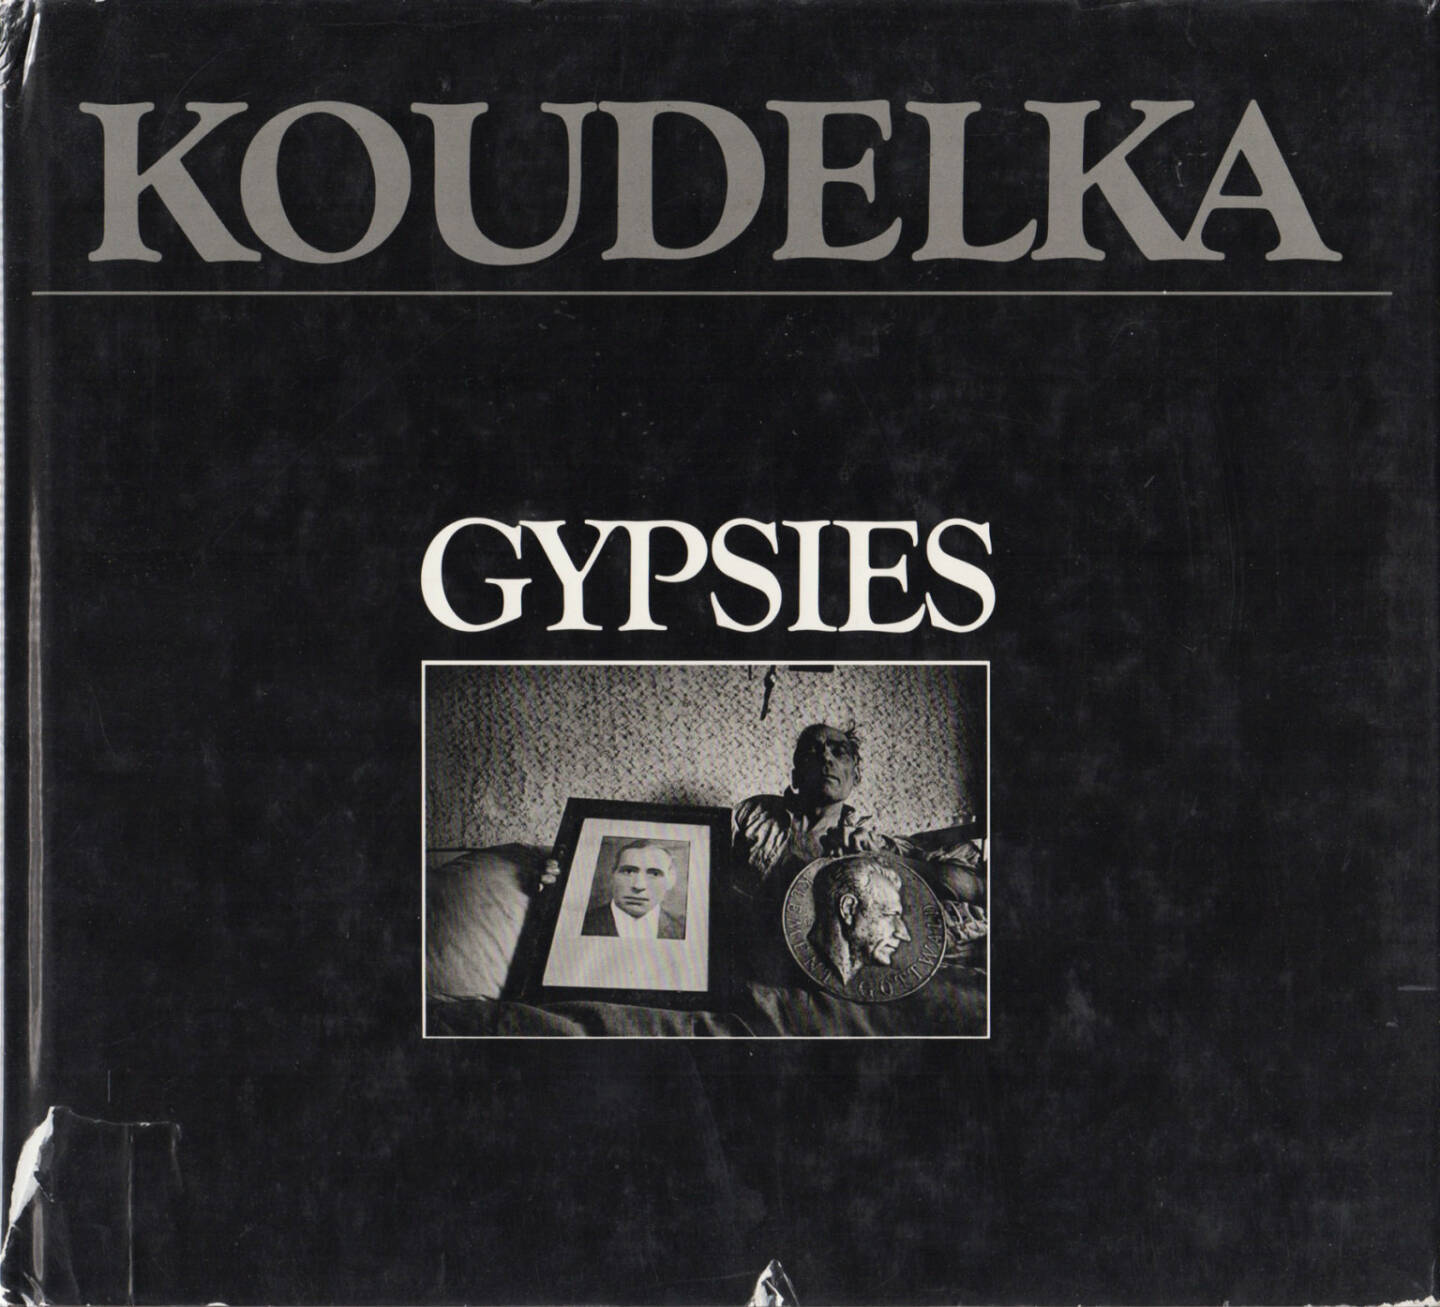 Josef Koudelka - Gypsies, Aperture, 1975, Cover - http://josefchladek.com/book/josef_koudelka_-_gypsies